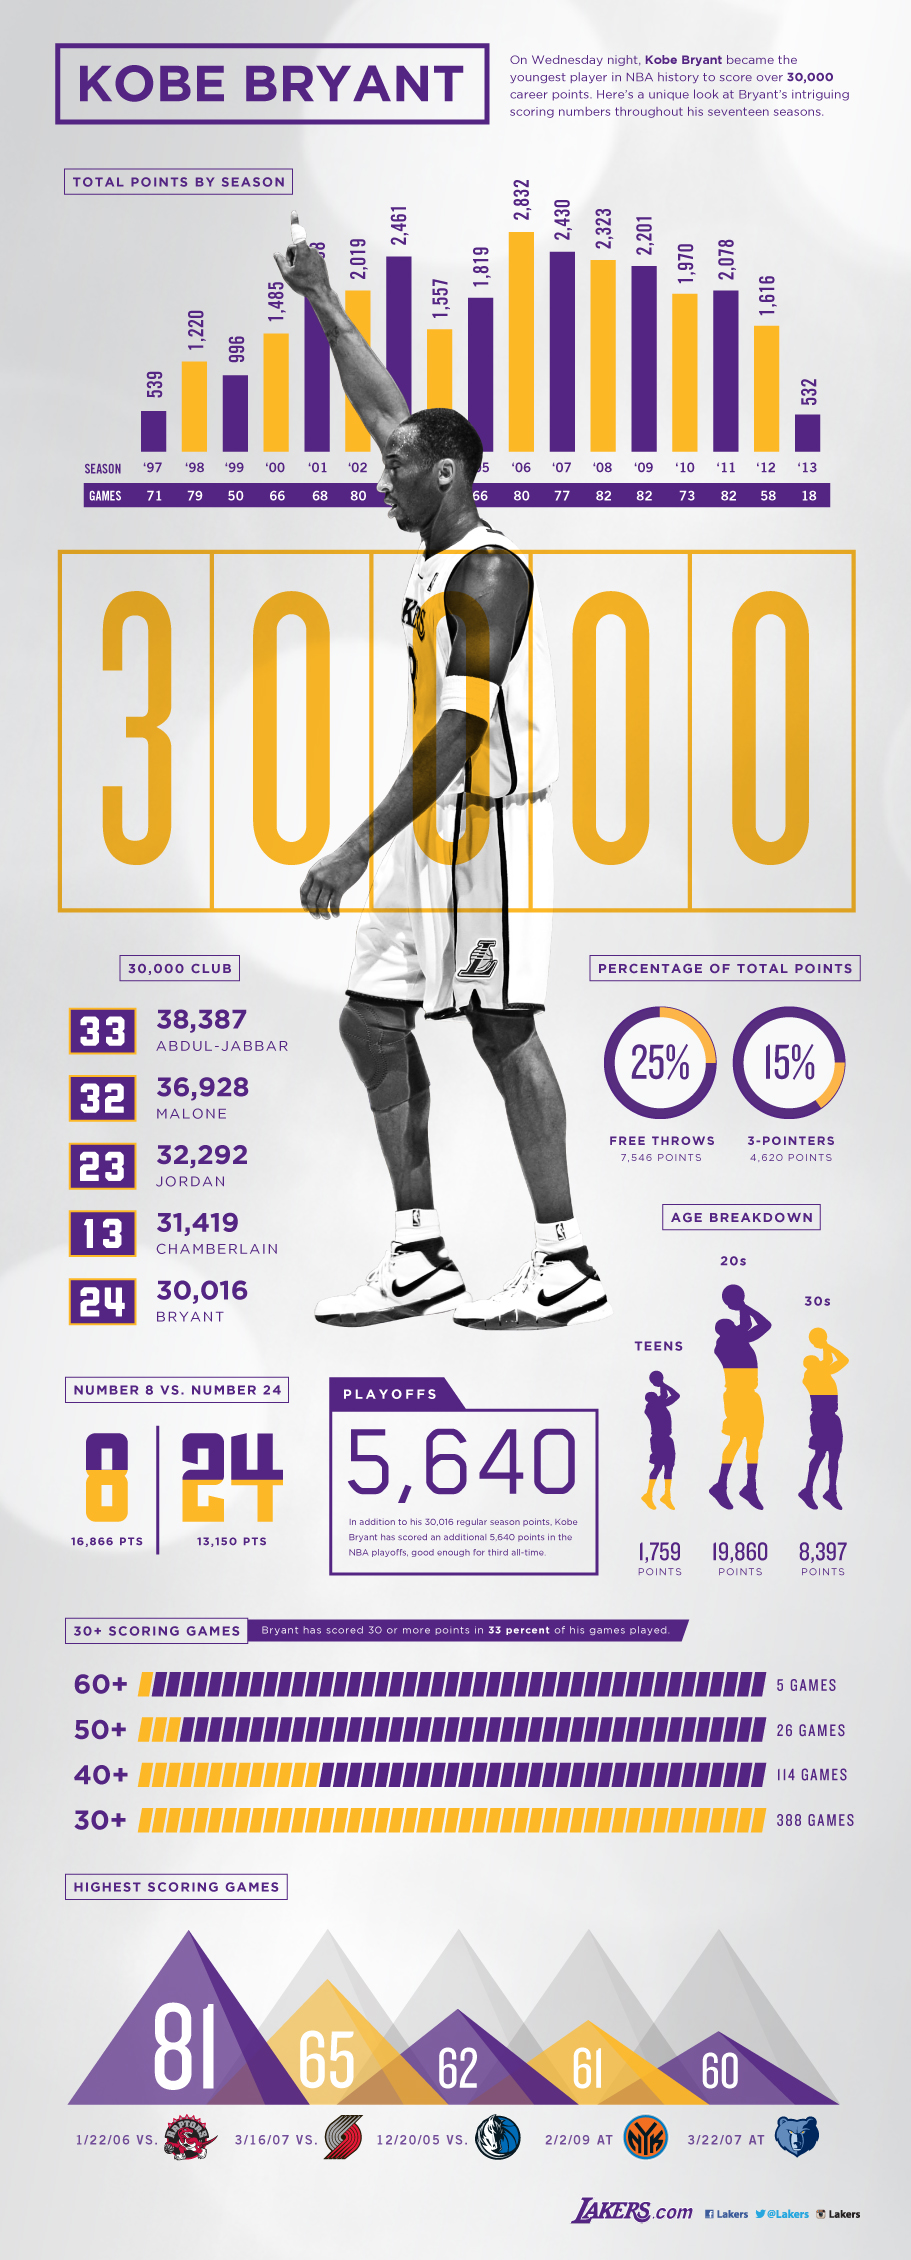 Kobe Bryant's career stats